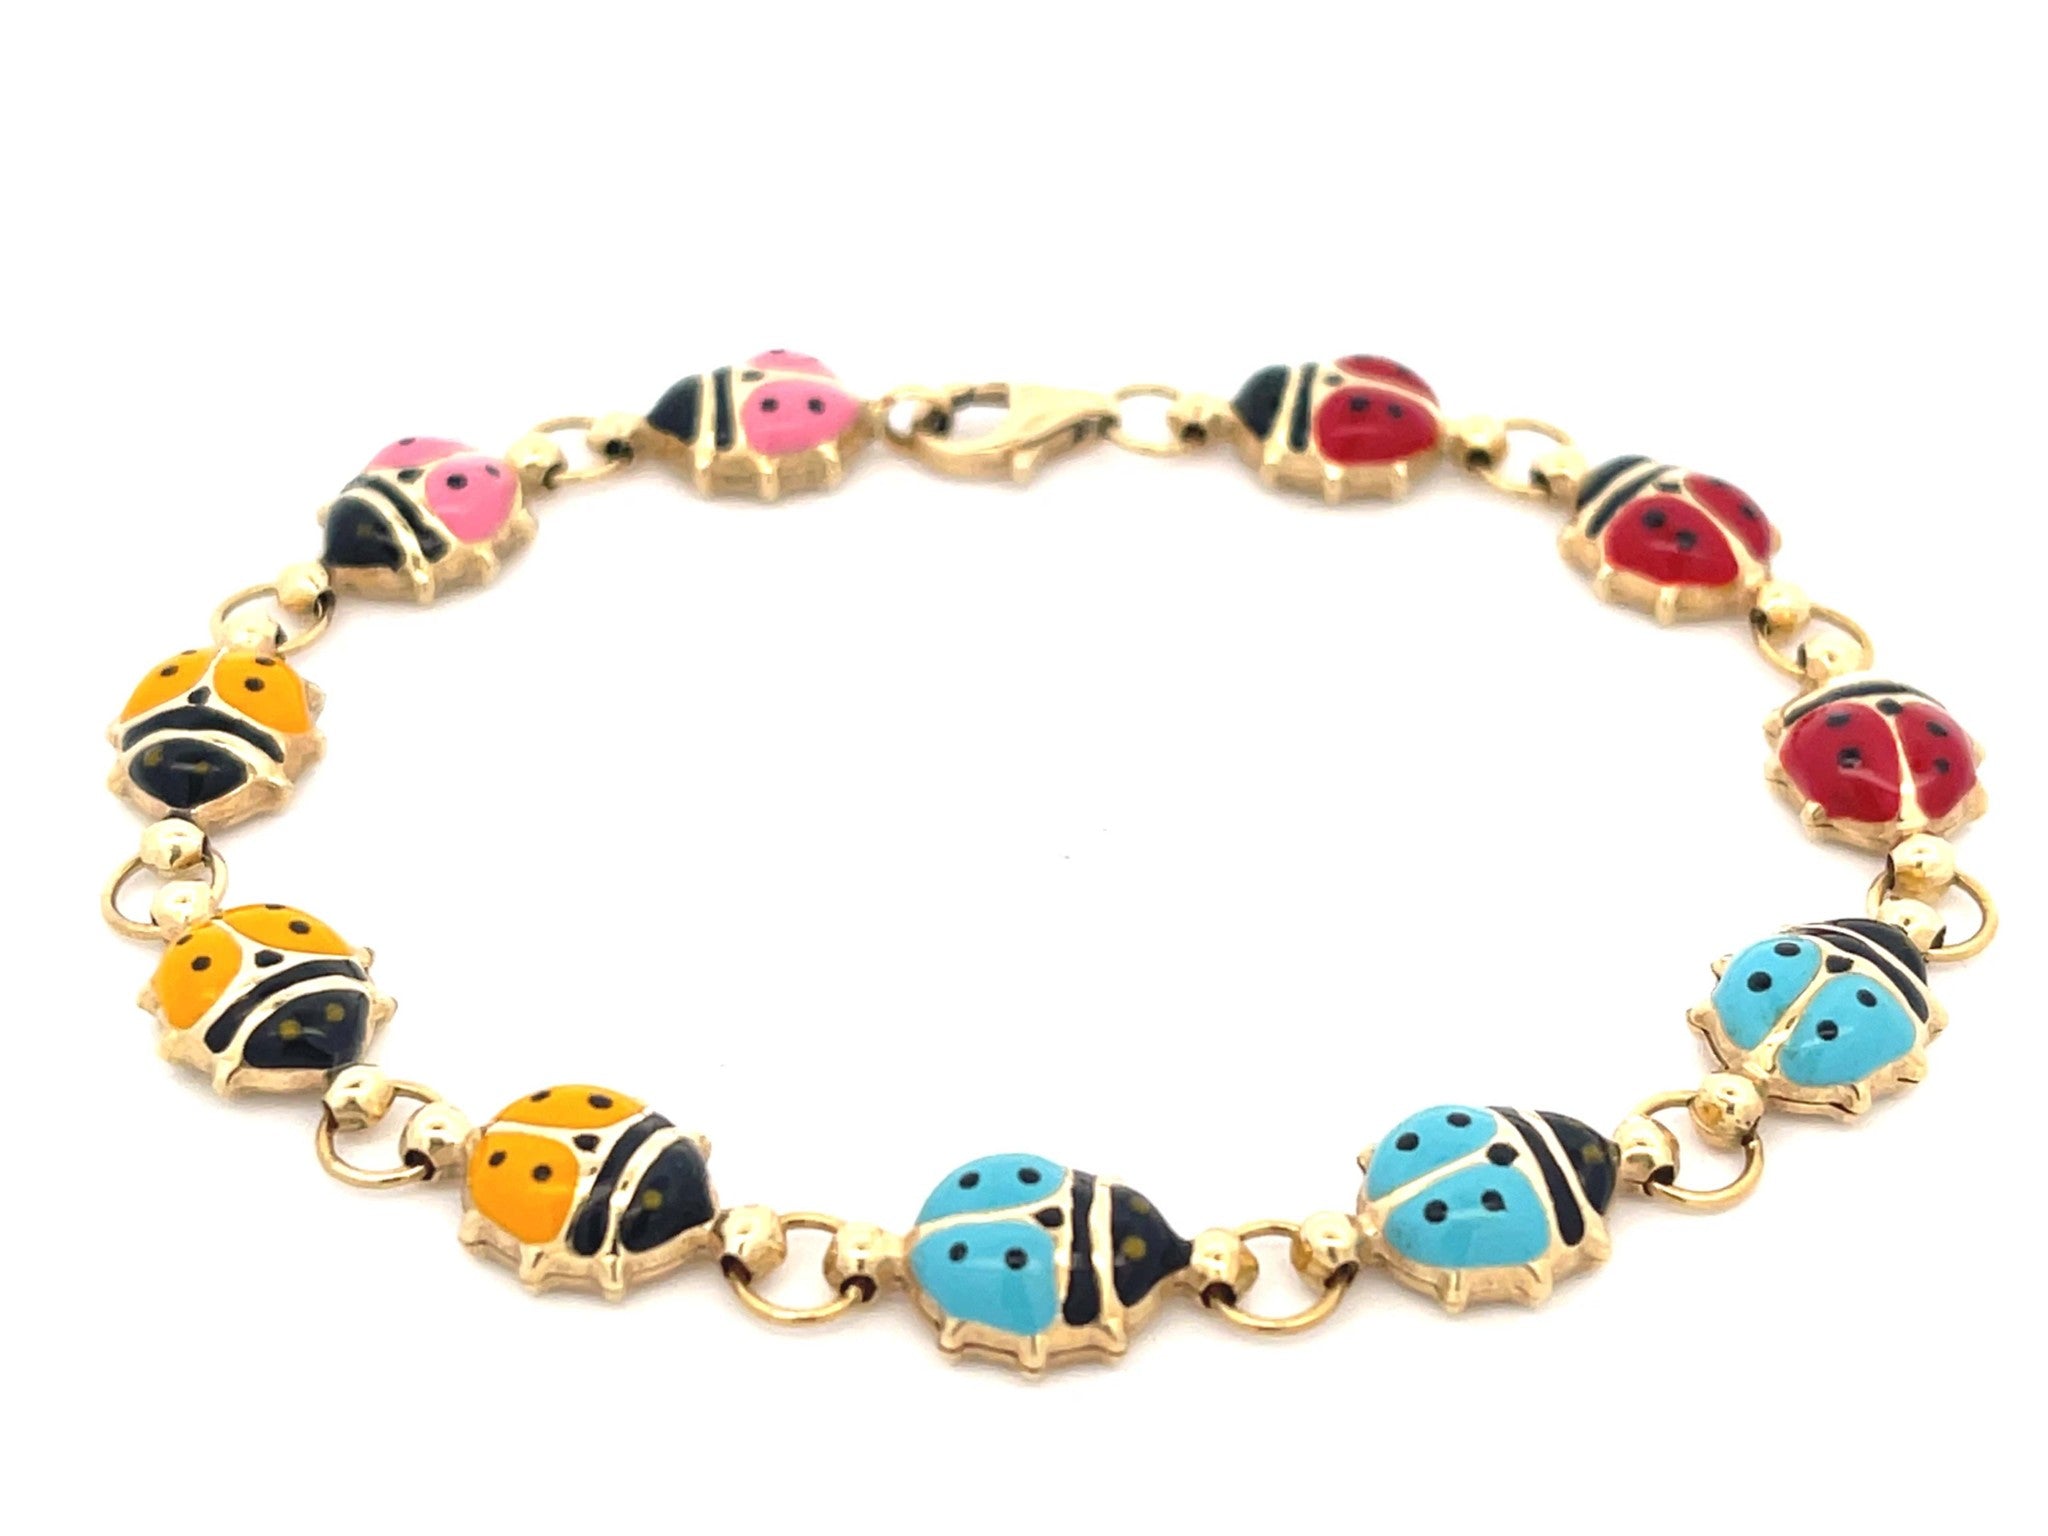 Colorful Enamel Ladybug Bracelet in 14k Yellow Gold